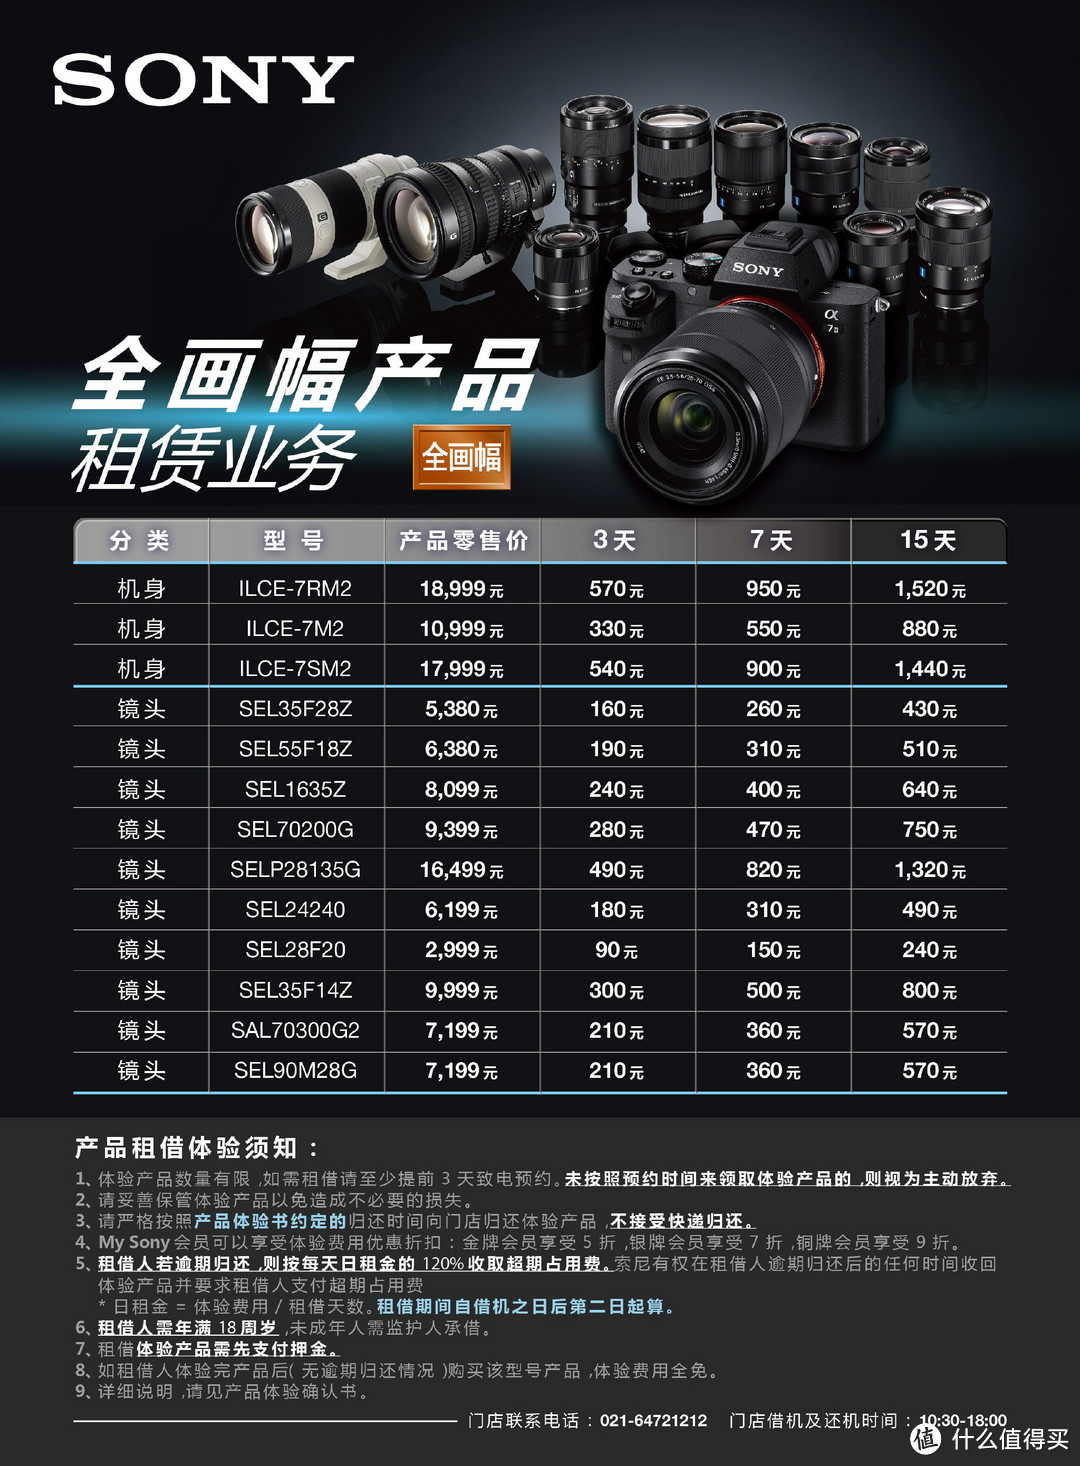 机身镜头太贵？租一个吧！上海SONY Store提供全画幅产品租赁业务